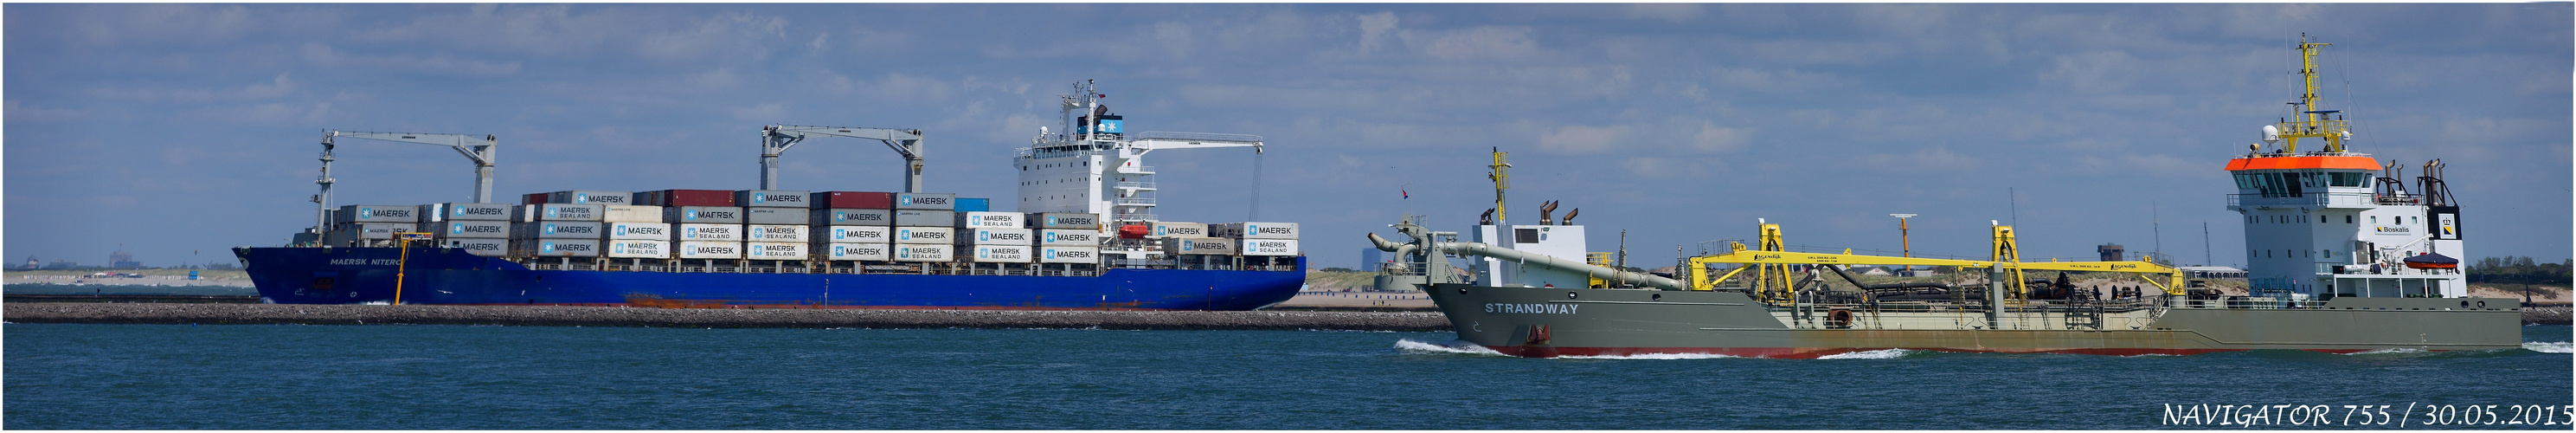 mAERSK NITEROY / Container Vessel / Rotterdam / Bitte srollen!